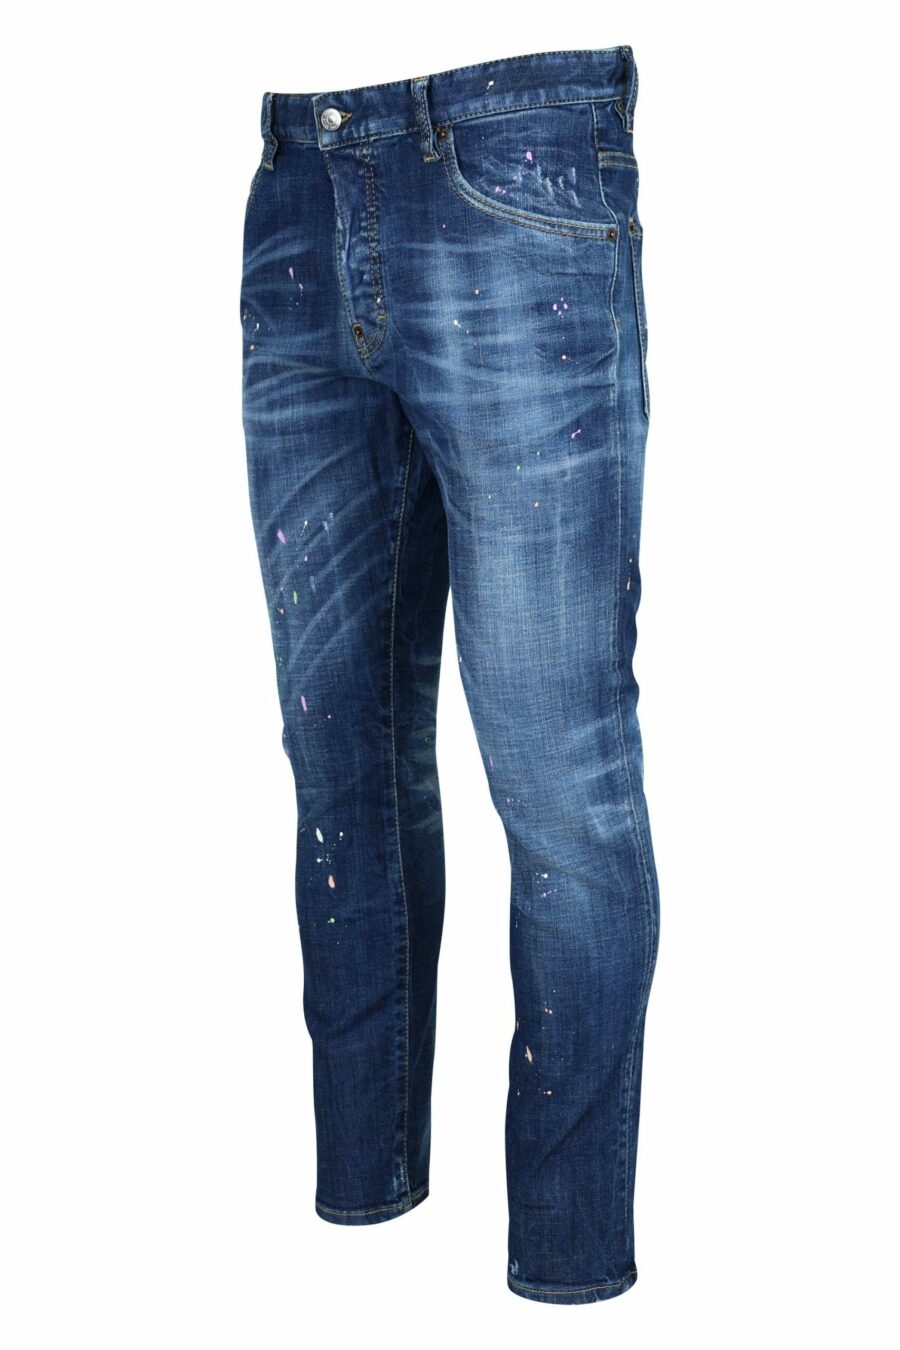 Calças de ganga "skater jean" azuis escuras com tinta branca - 8054148527457 1 à escala